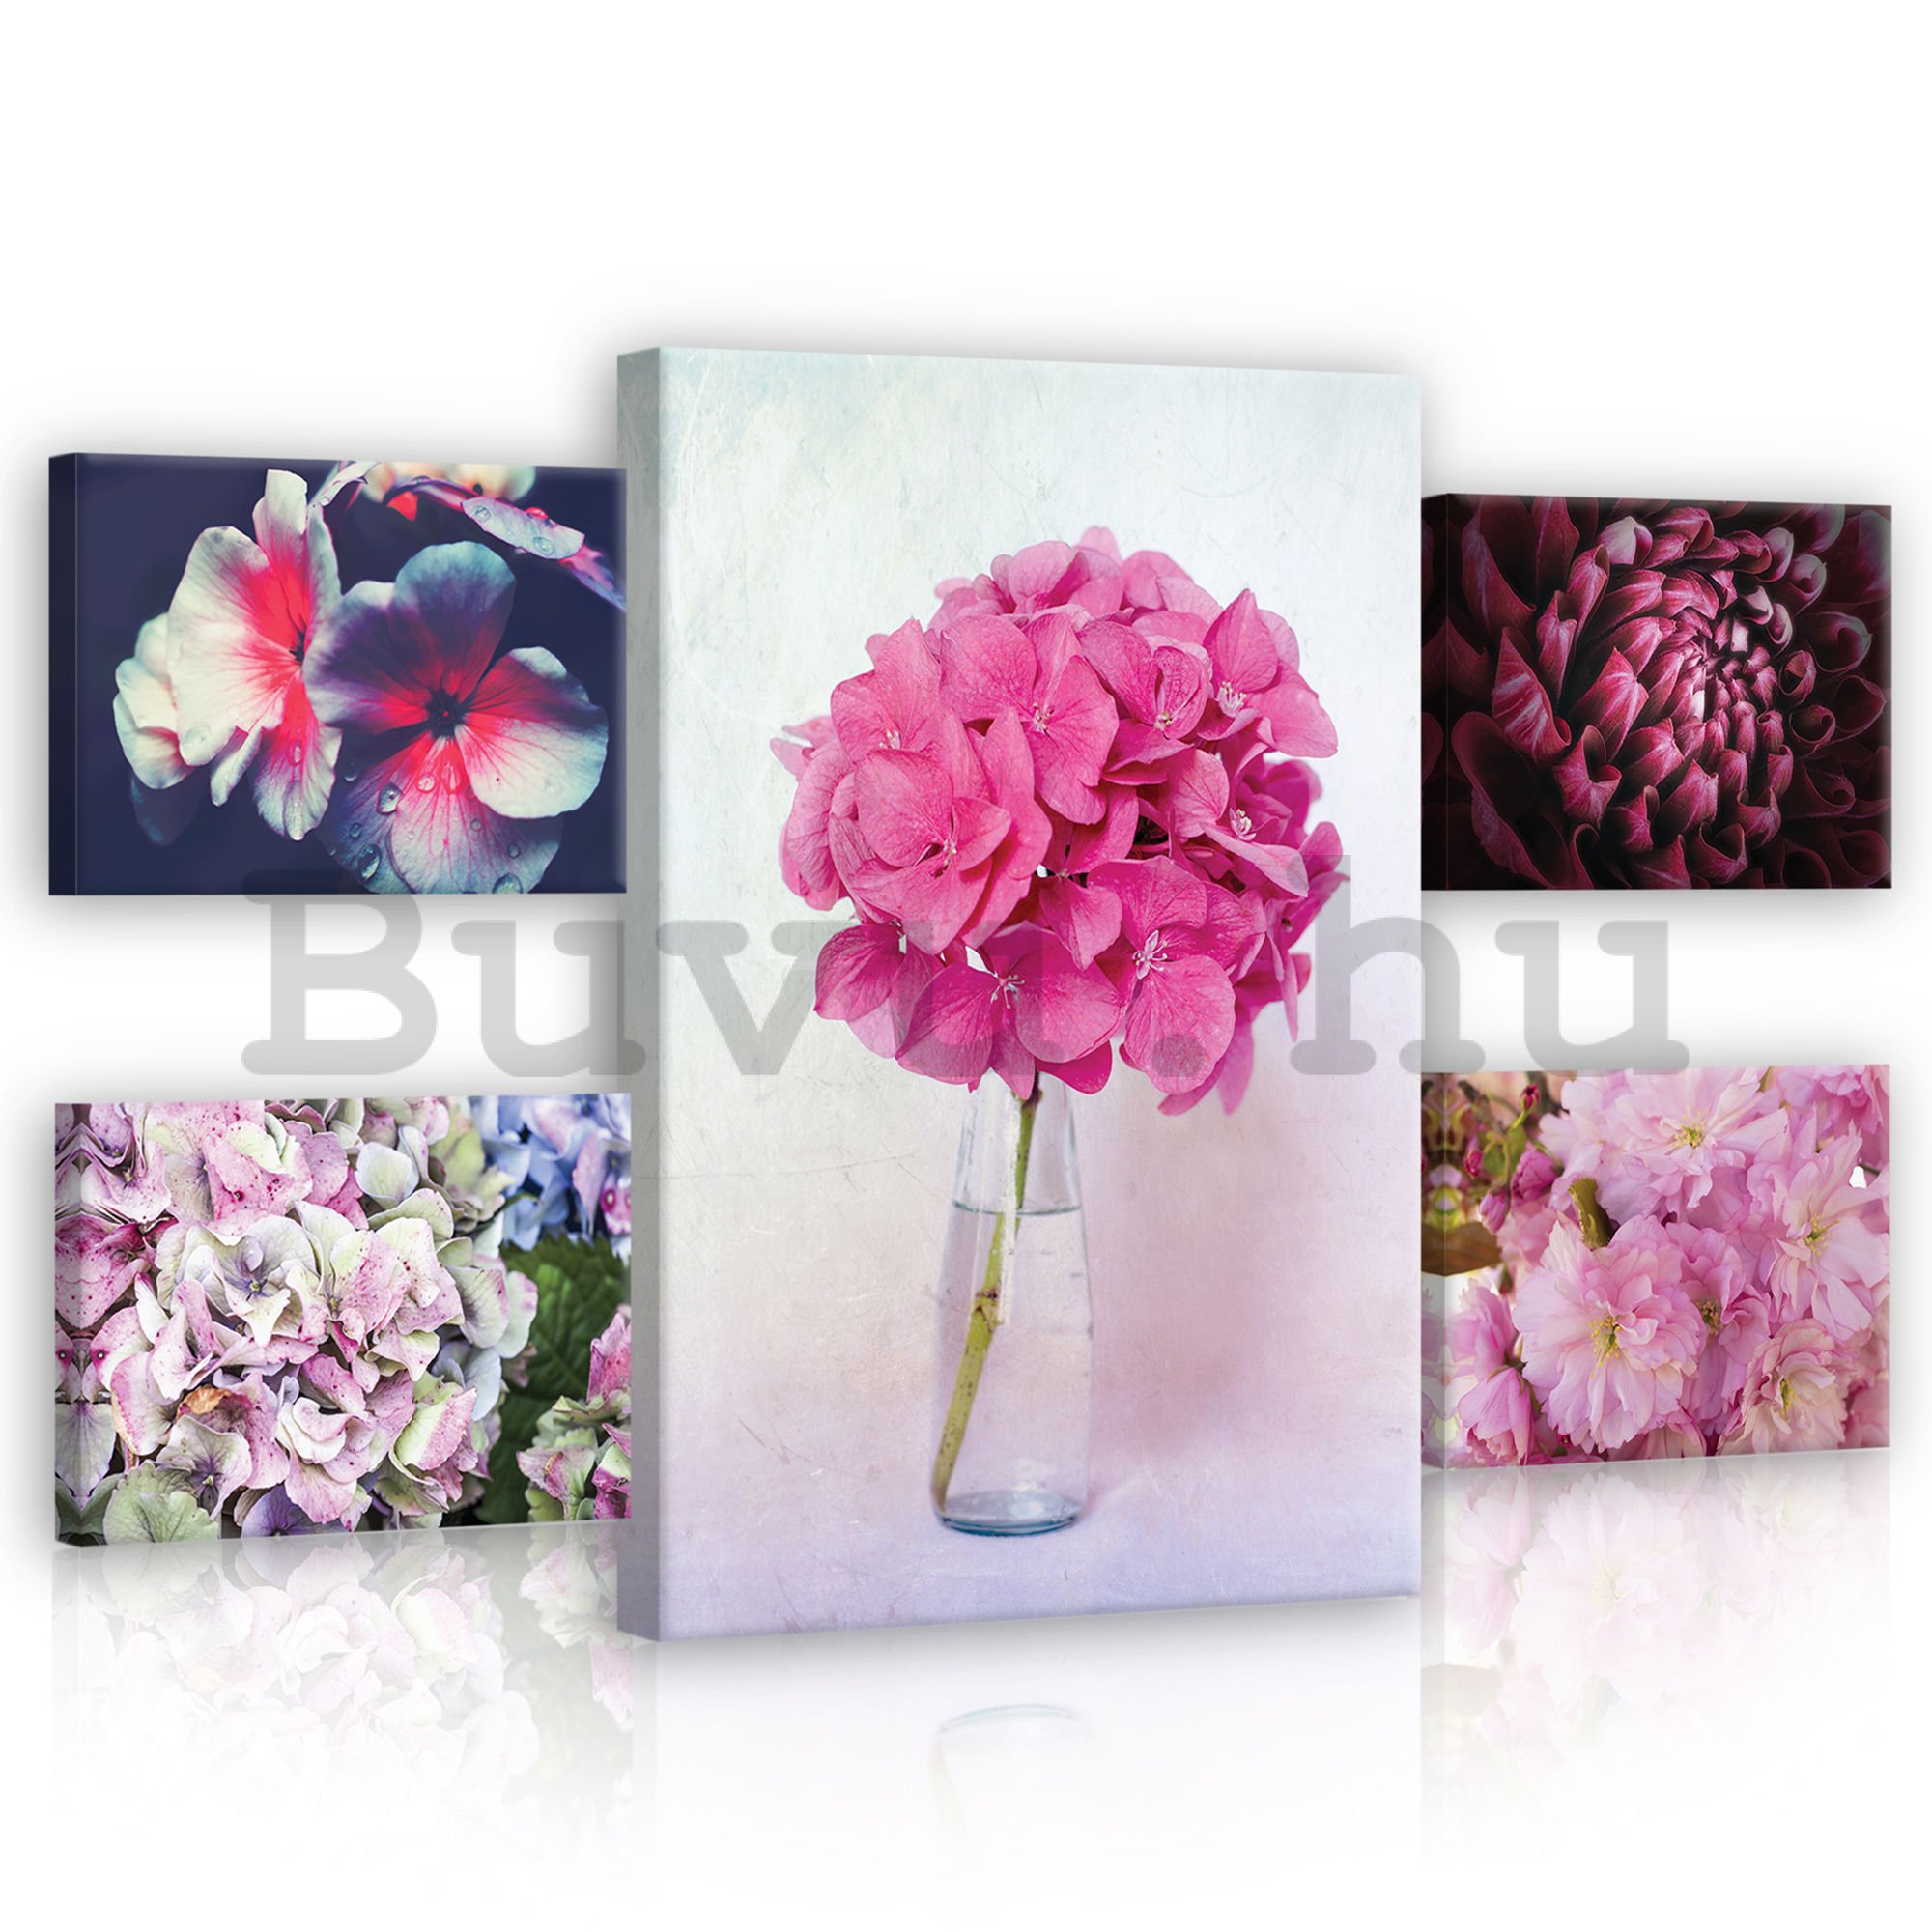 Vászonkép: Rózsaszín virágok - készlet 1 db 70x50 cm és 4 db 32,4x22,8 cm